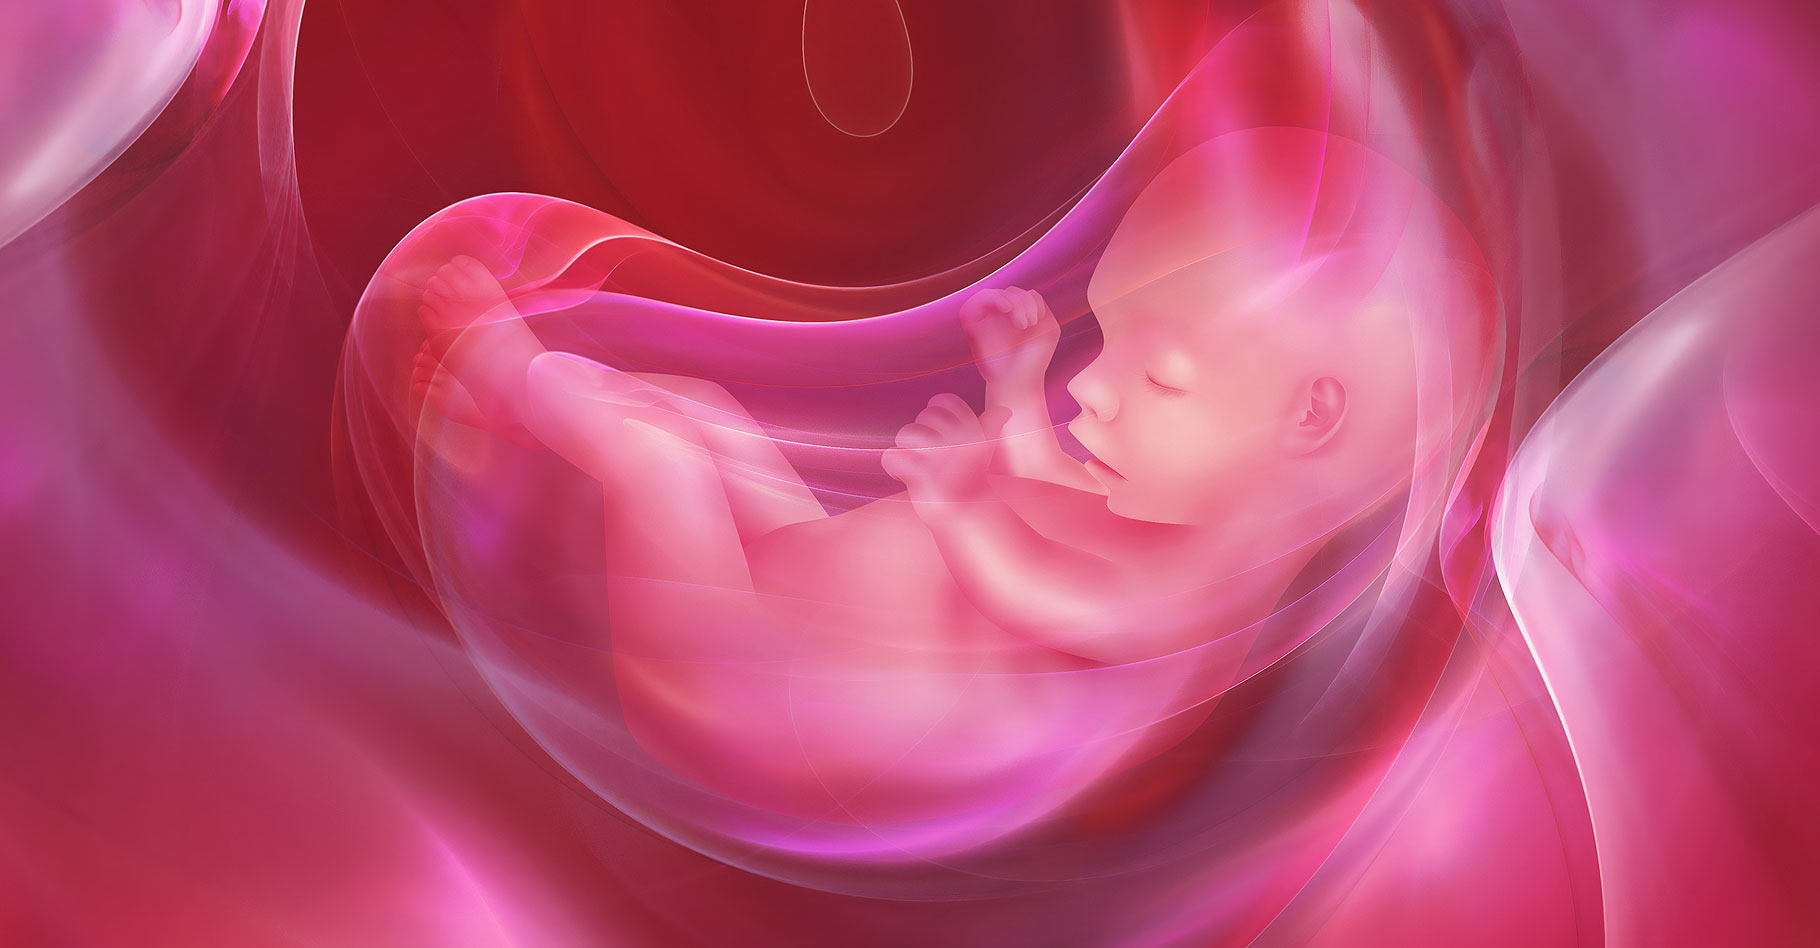 Tout savoir sur l'accouchement et la naissance de bébé. © Zffoto, Shutterstock